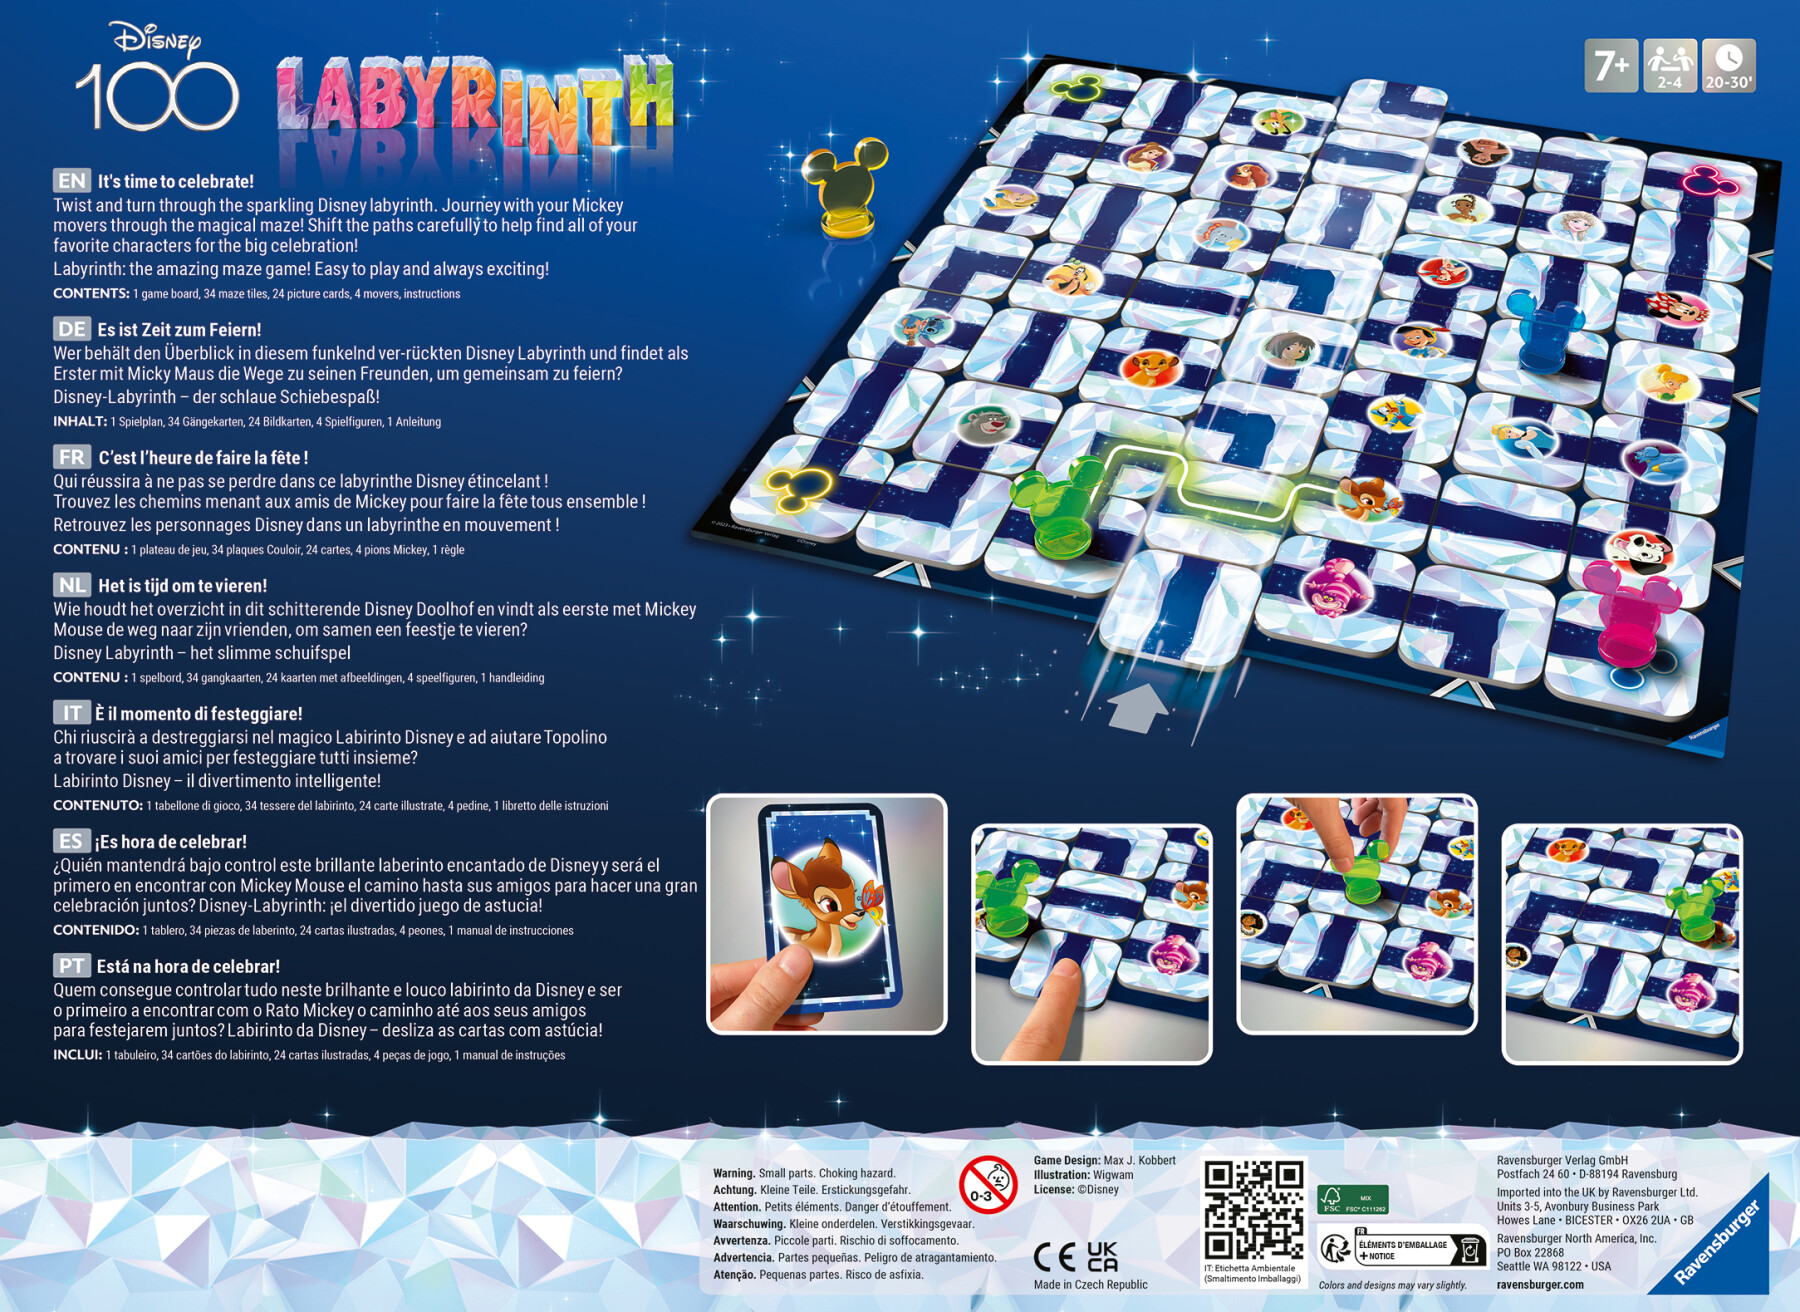 Ravensburger – labirinto magico disney 100th anniversary labyrinth, gioco da tavolo, da 2 a 4 giocatori, 7+ anni - RAVENSBURGER